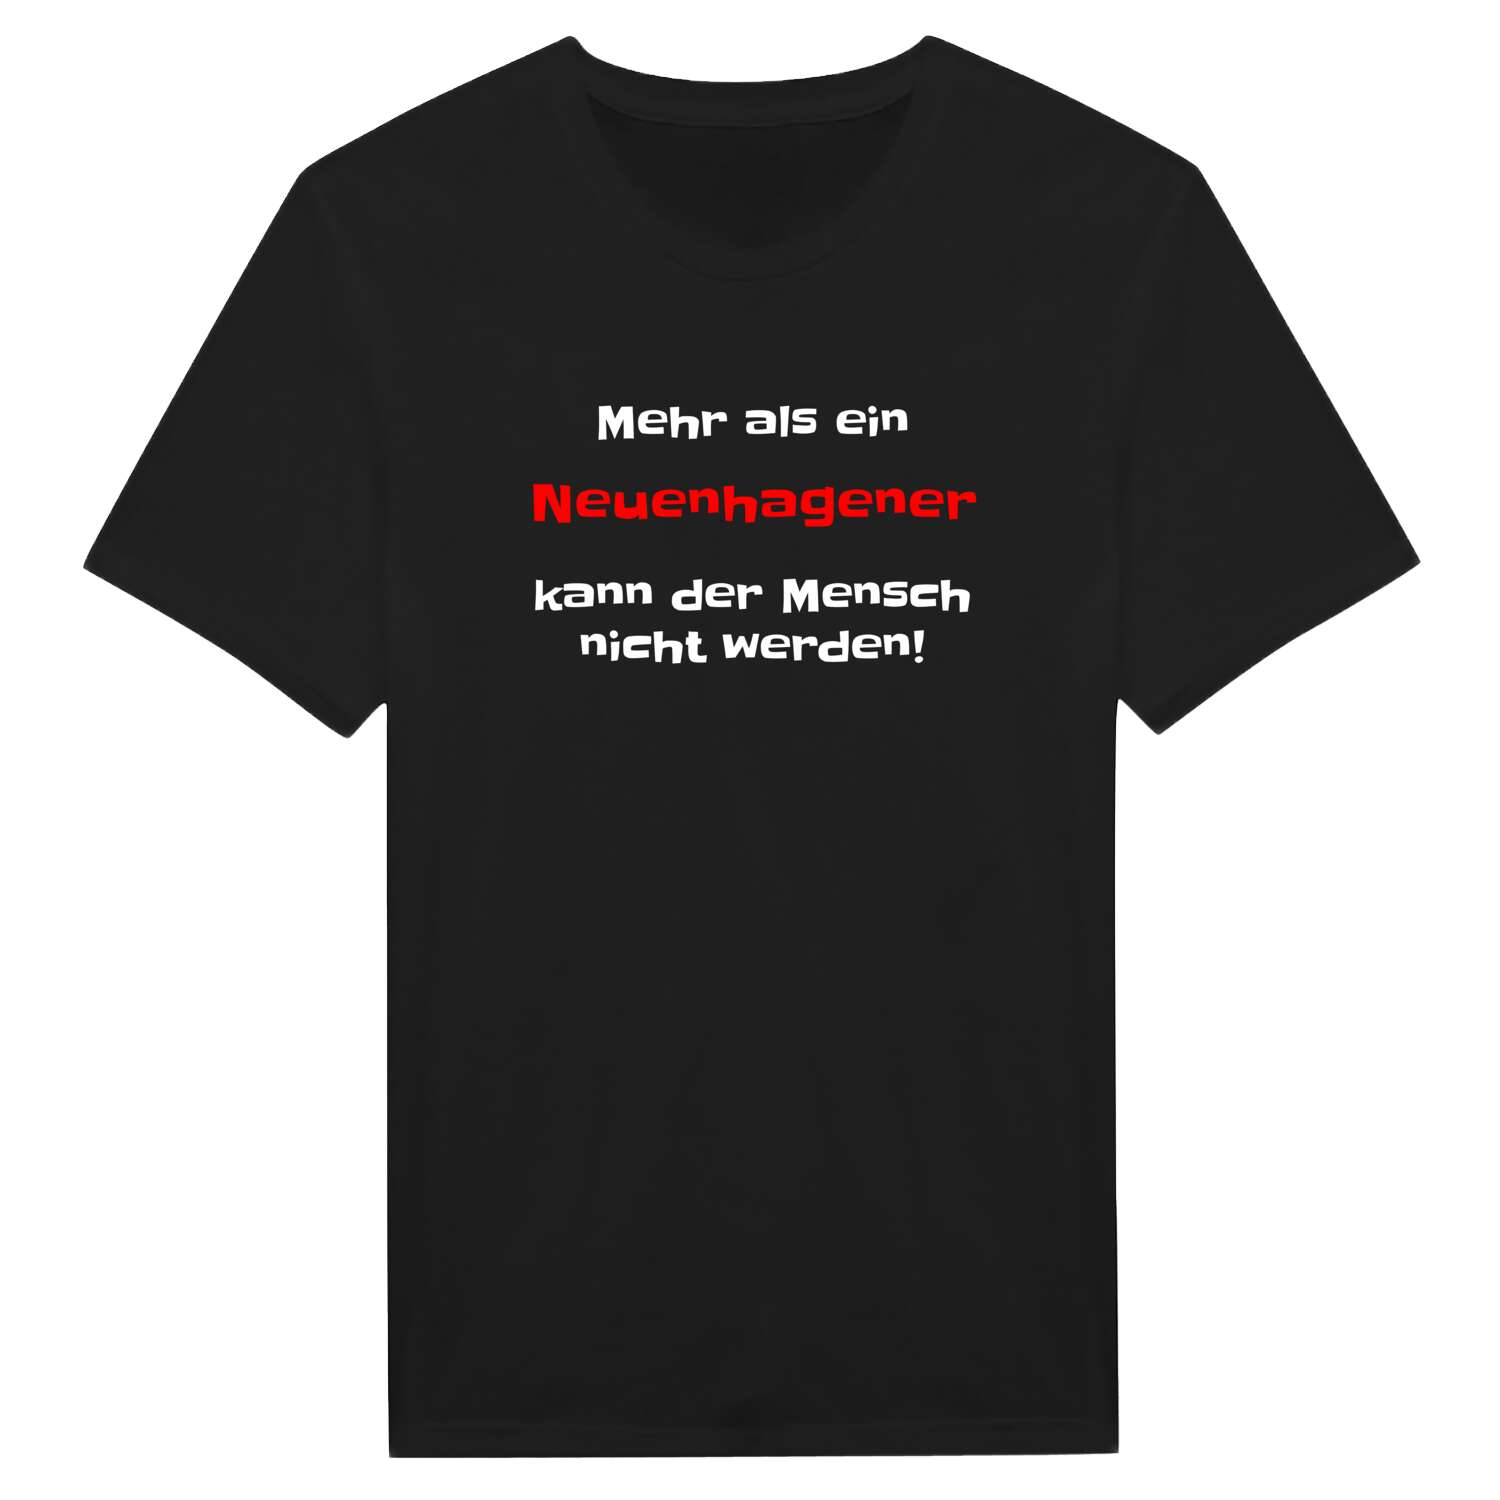 Neuenhagen T-Shirt »Mehr als ein«